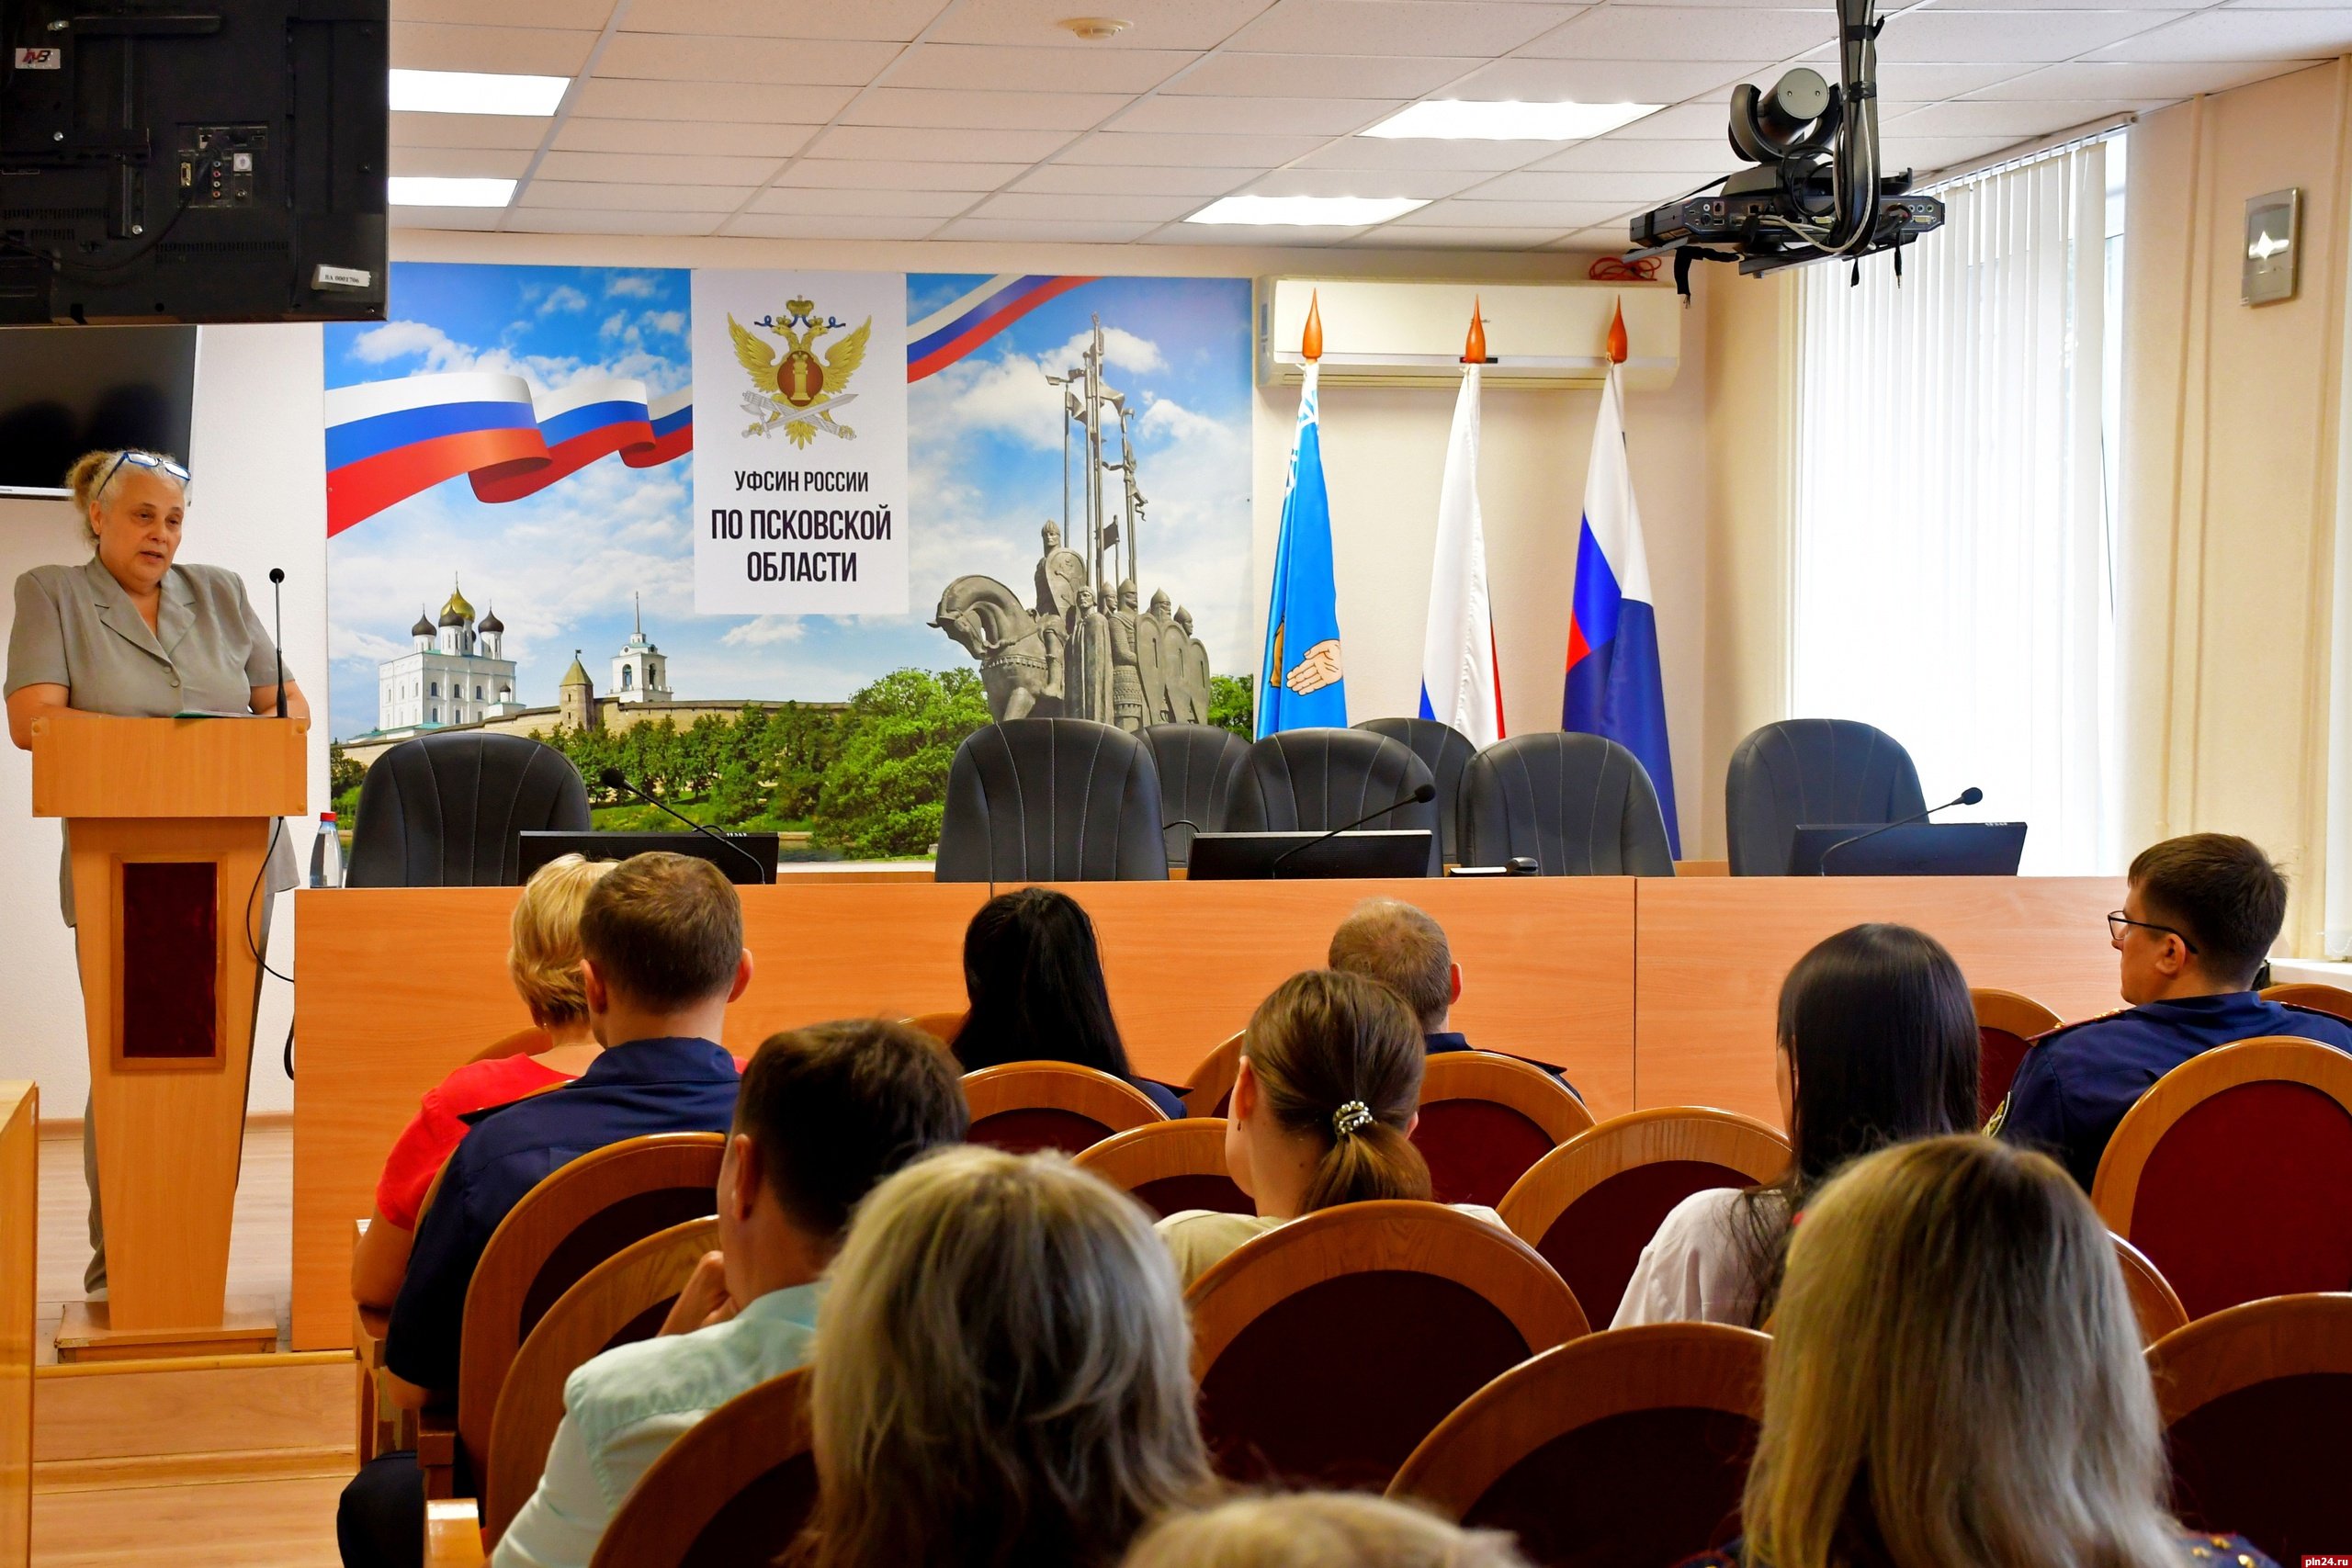 Специалист областного центра семьи провела лекцию для сотрудников псковского УФСИН